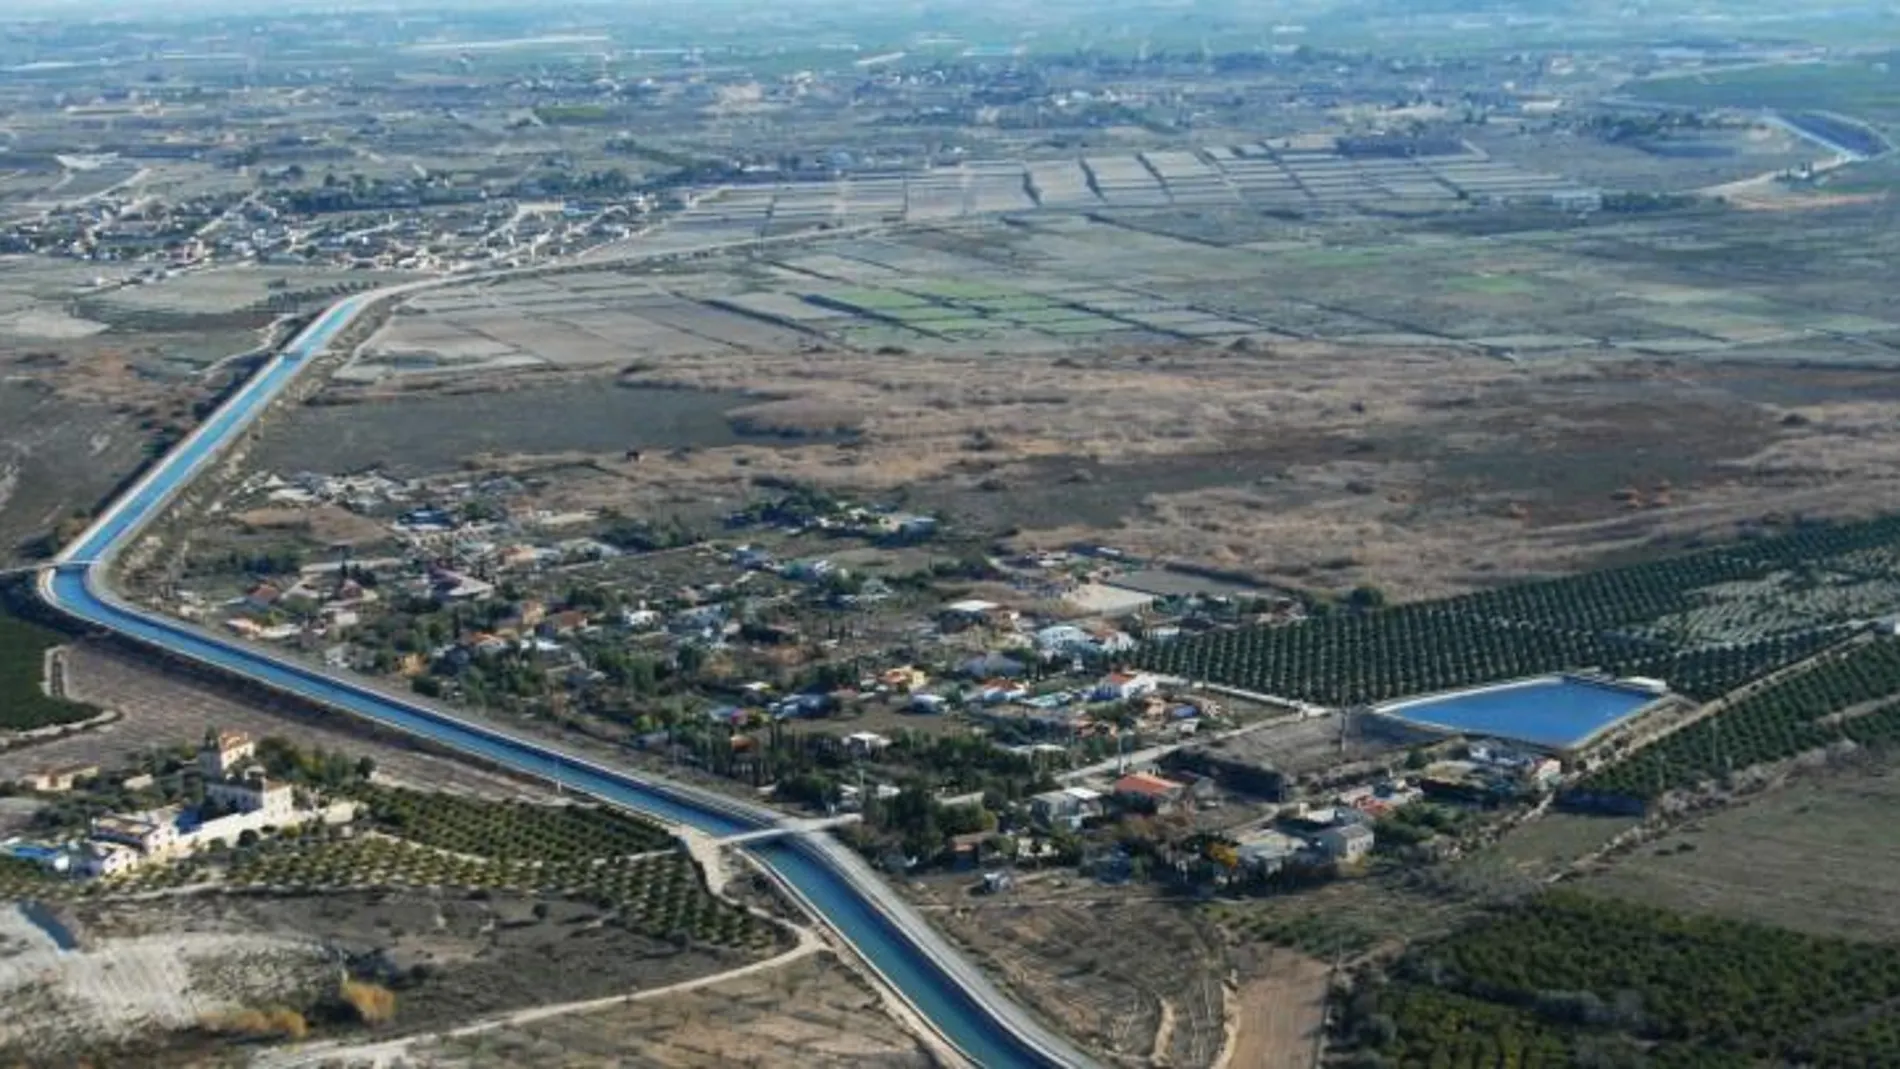 La aprobación del informe sobre la utilizaciòn del agua hubiera supuesto el fin de la agricultura y el turismo en la Comunitat Valenciana